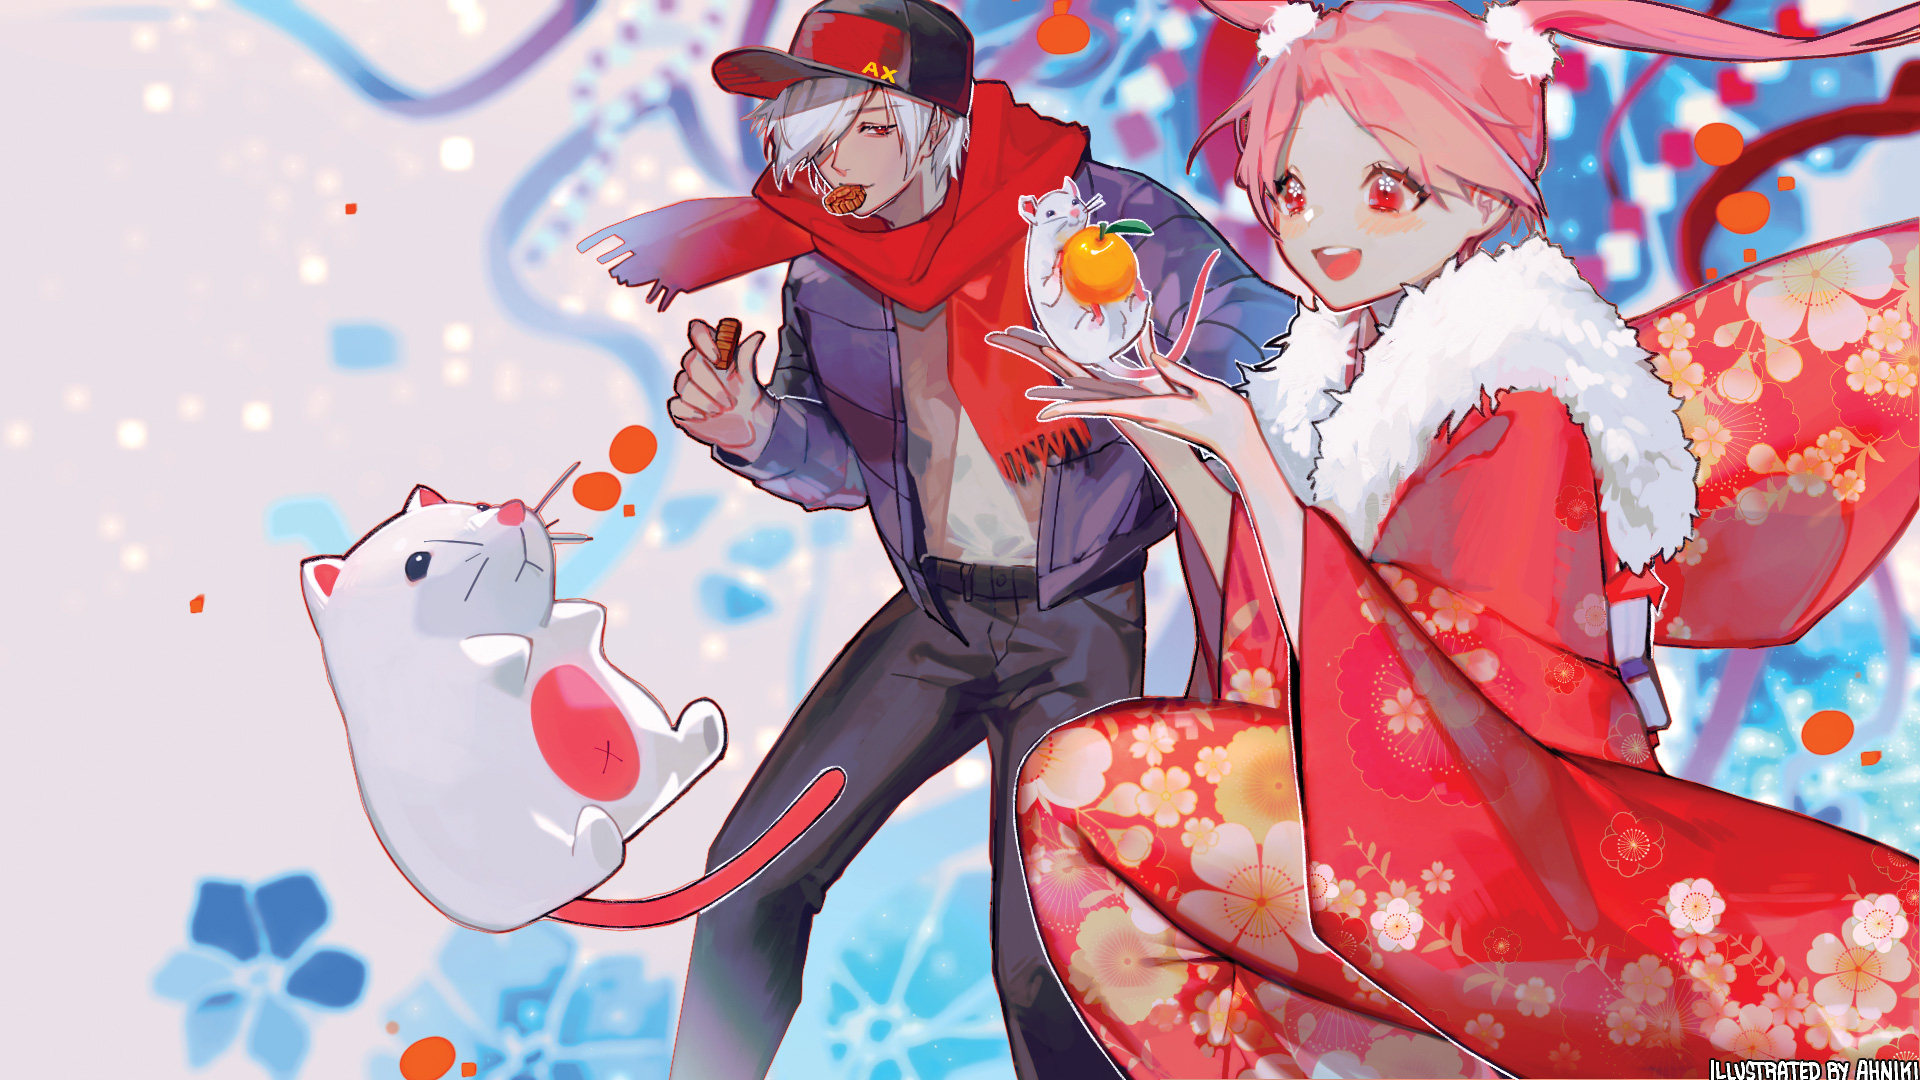 New Year 2020 Artist Collaboration Spotlight Ahniki Anime Expo